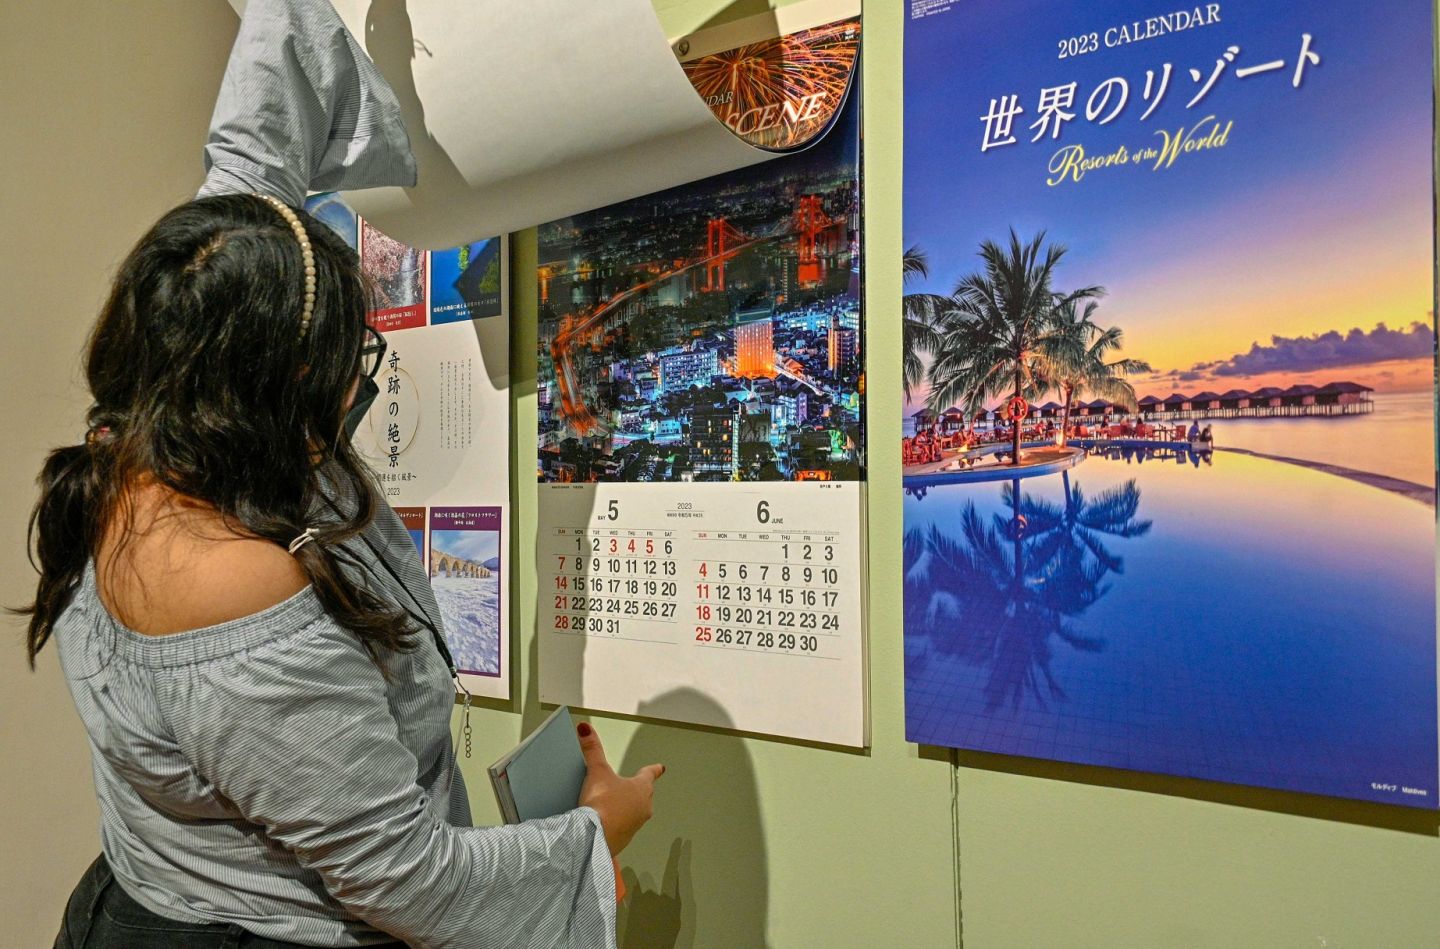 El Museo Nacional de las Culturas del Mundo recibe 2023 con exhibición de calendarios japoneses
